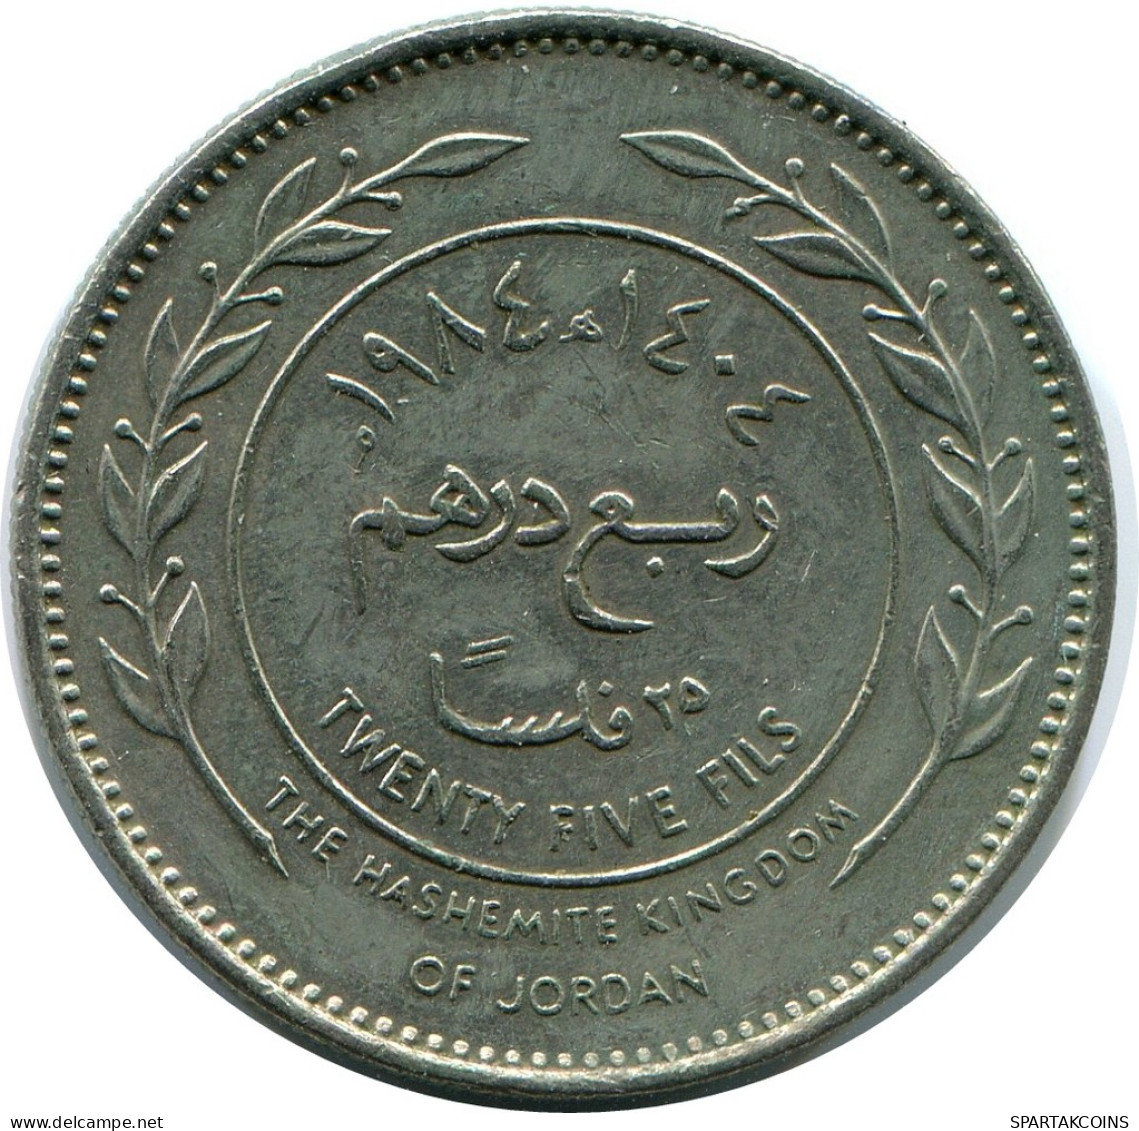 1/4 DIRHAM 25 FILS 1984 JORDAN Islamic Coin #AK157.U - Jordanie